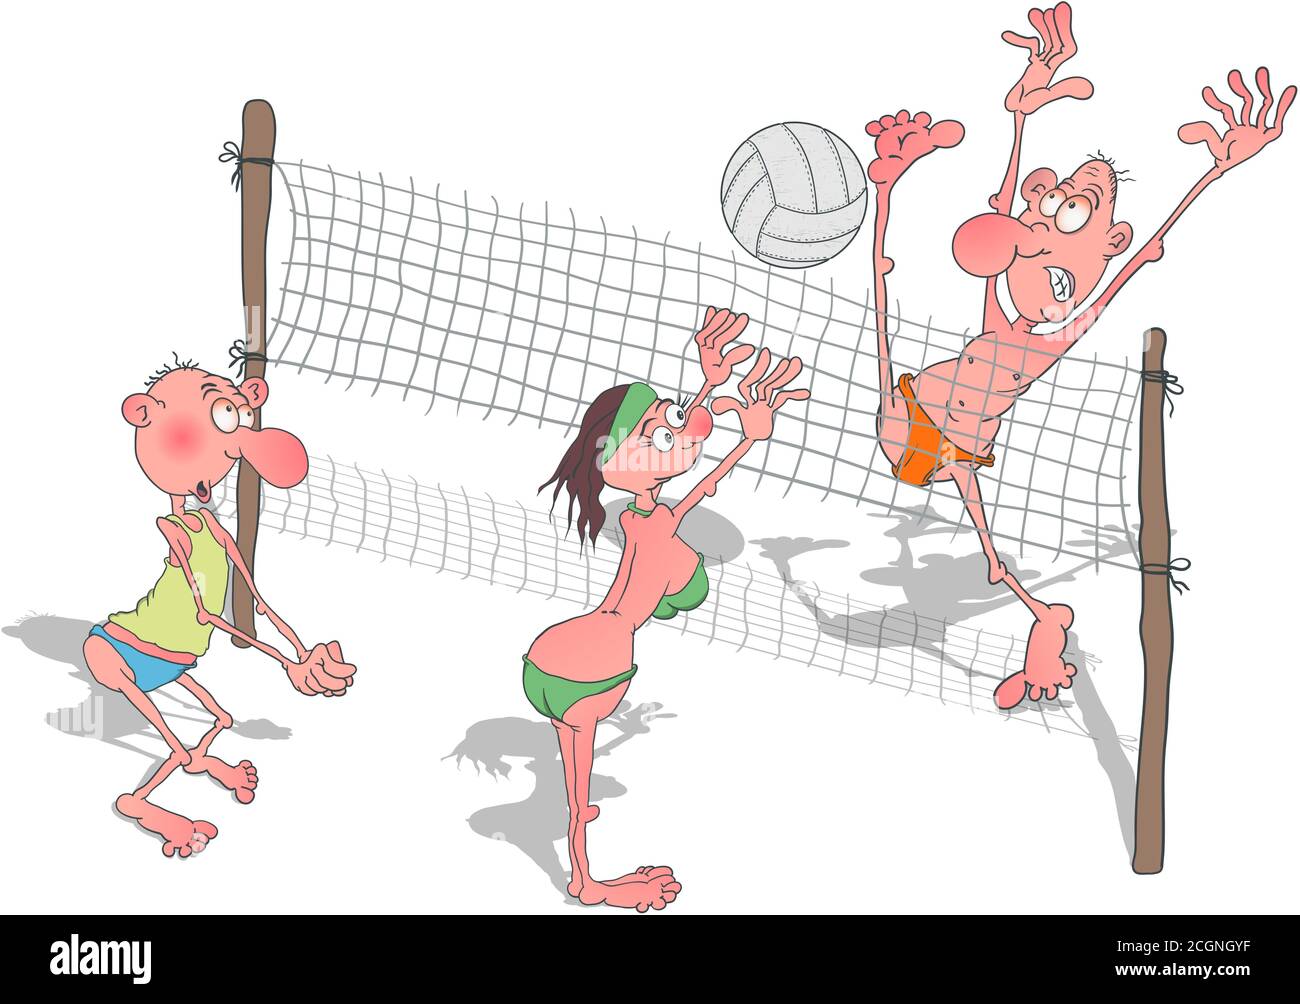 Joueur de beach volley Banque d'images détourées - Page 3 - Alamy